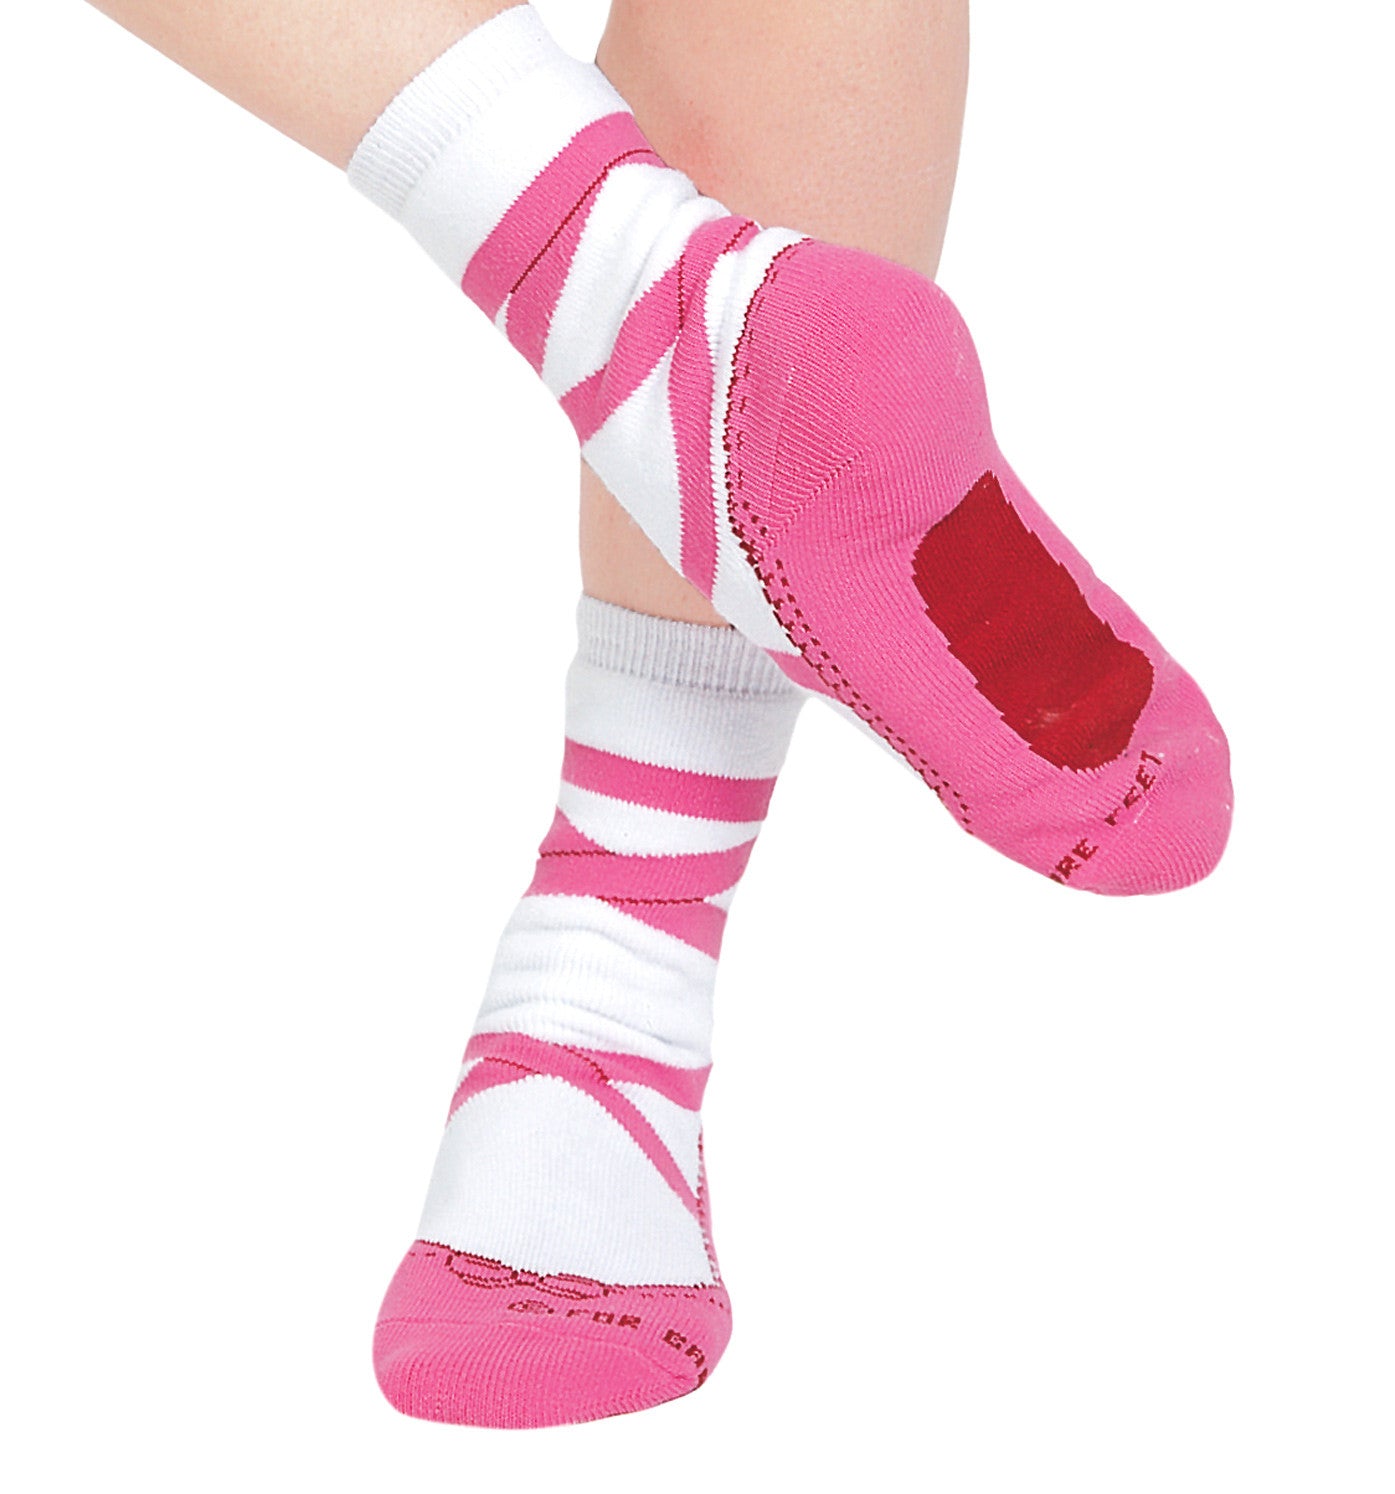 Pointe Shoe Socks - $17.95